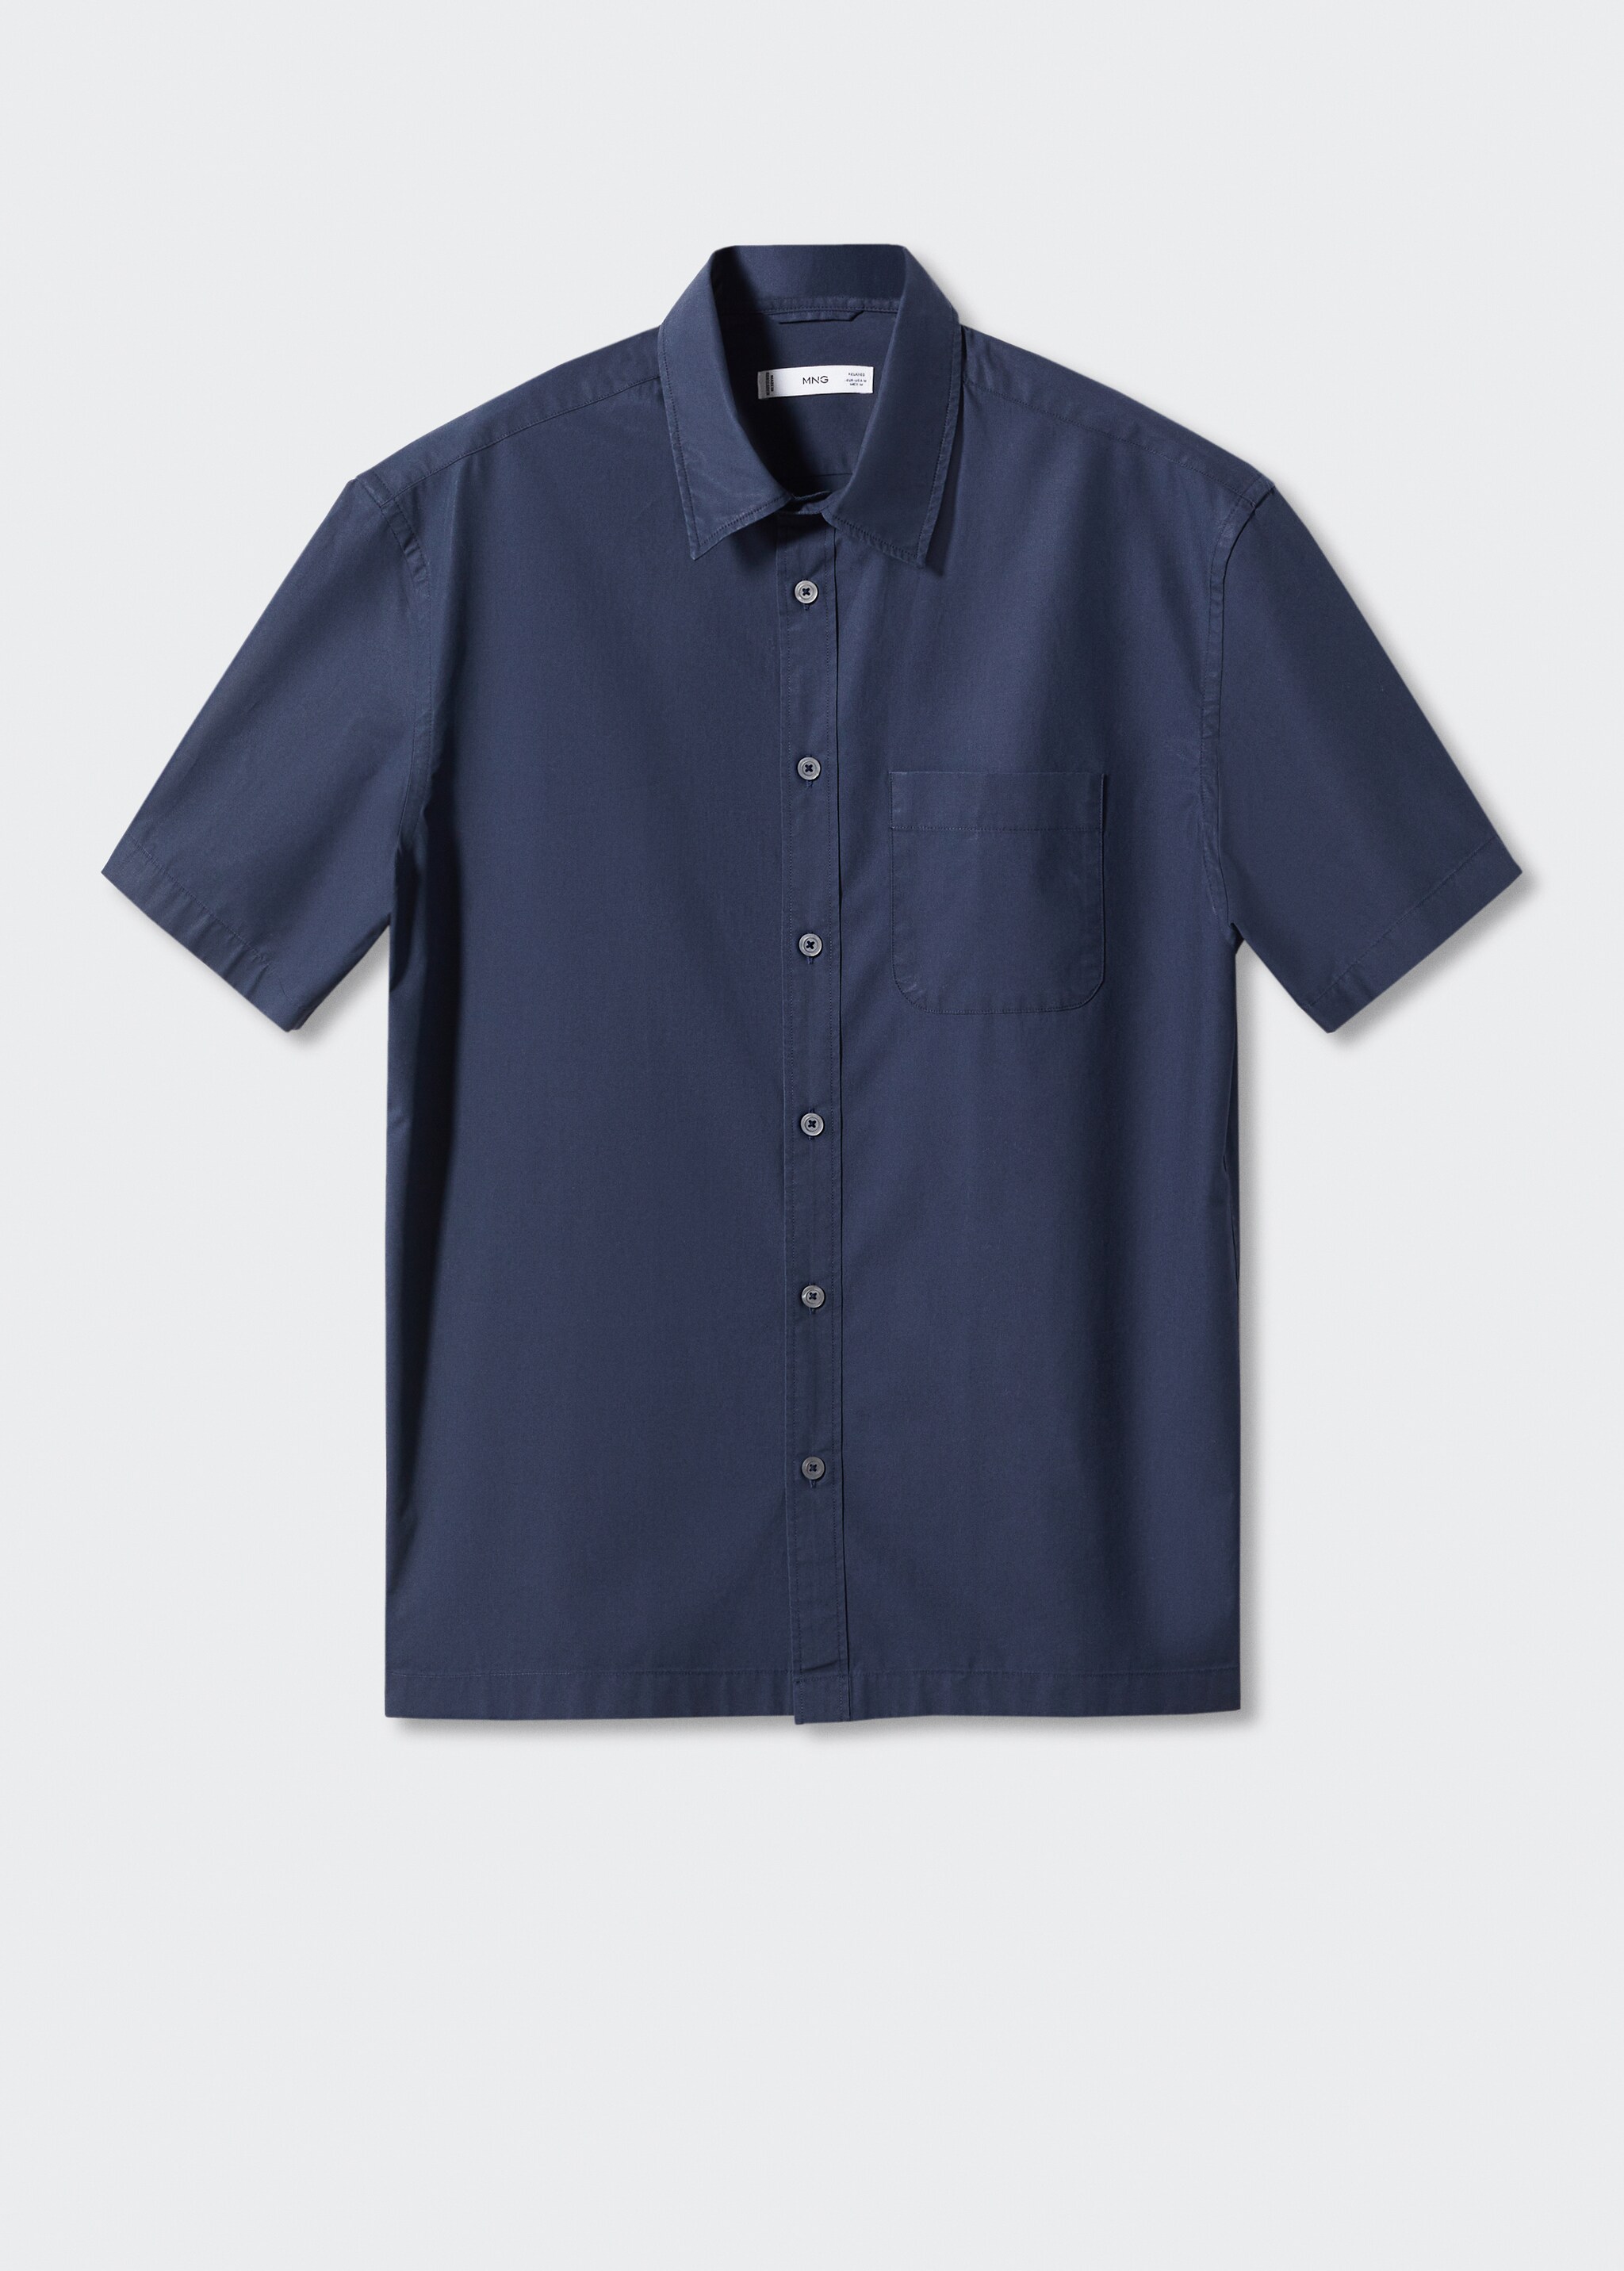 Bomullsskjorte med korte ermer, regular-fit - Artikkel uten modell